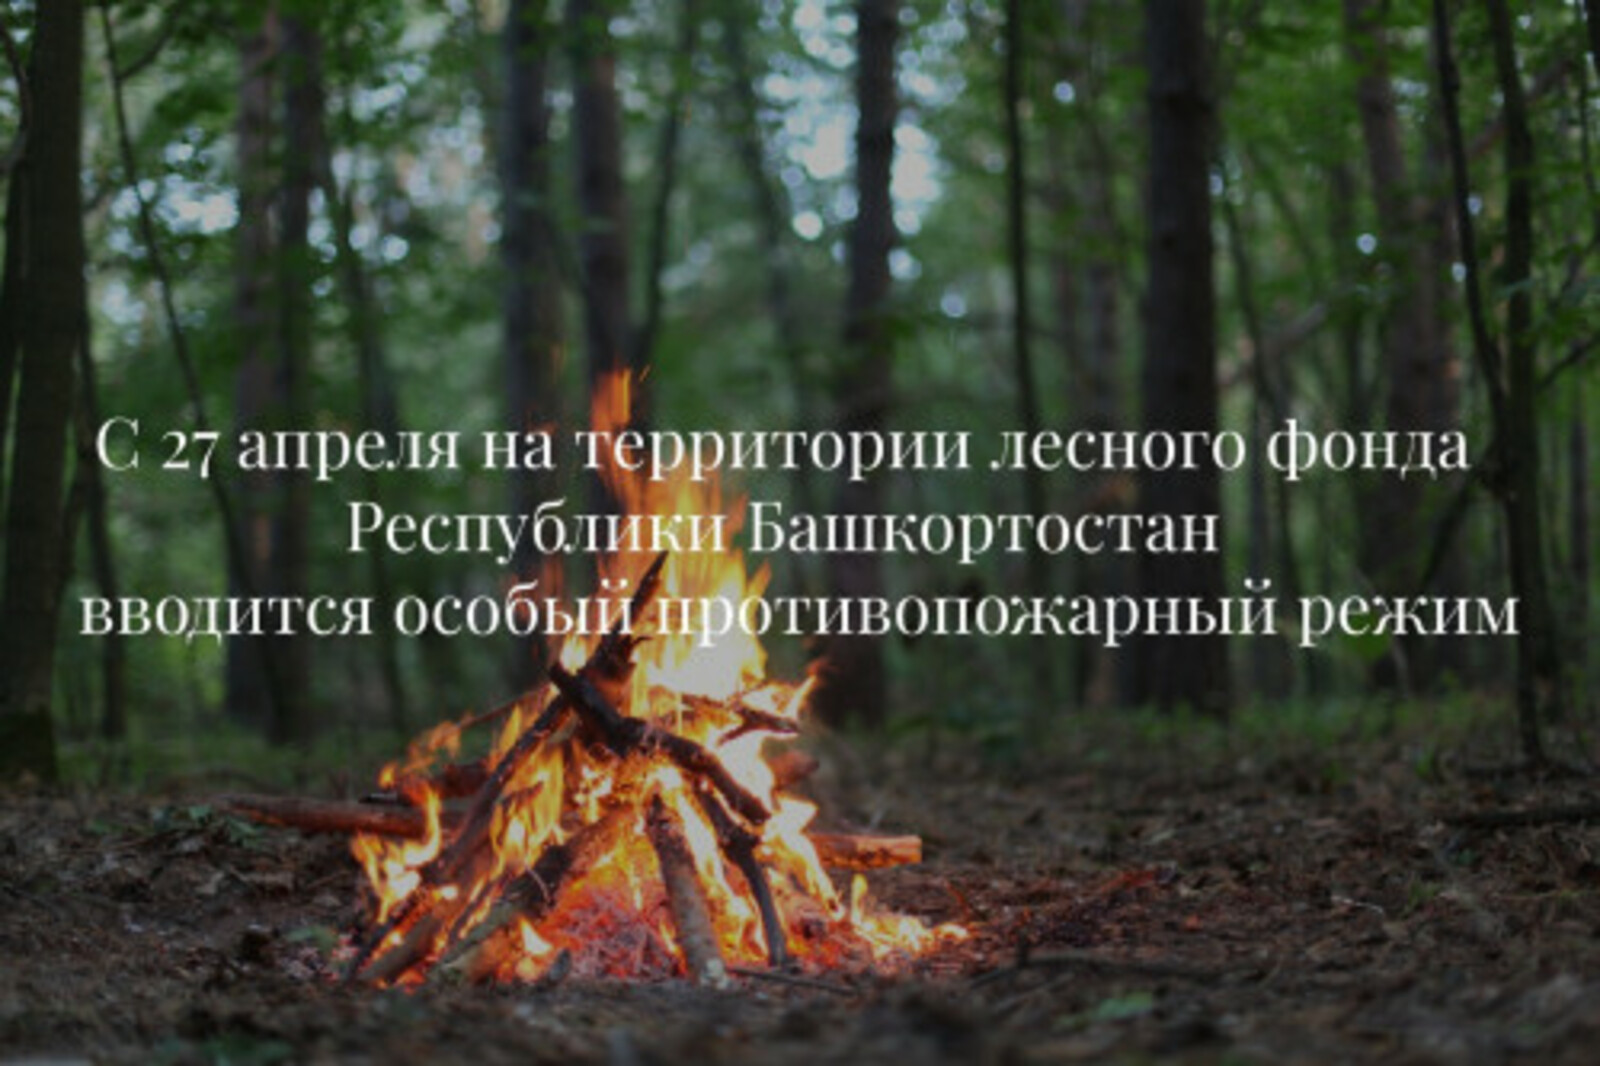 В лесах Республики Башкортостан с 27 апреля вводится особый противопожарный режим